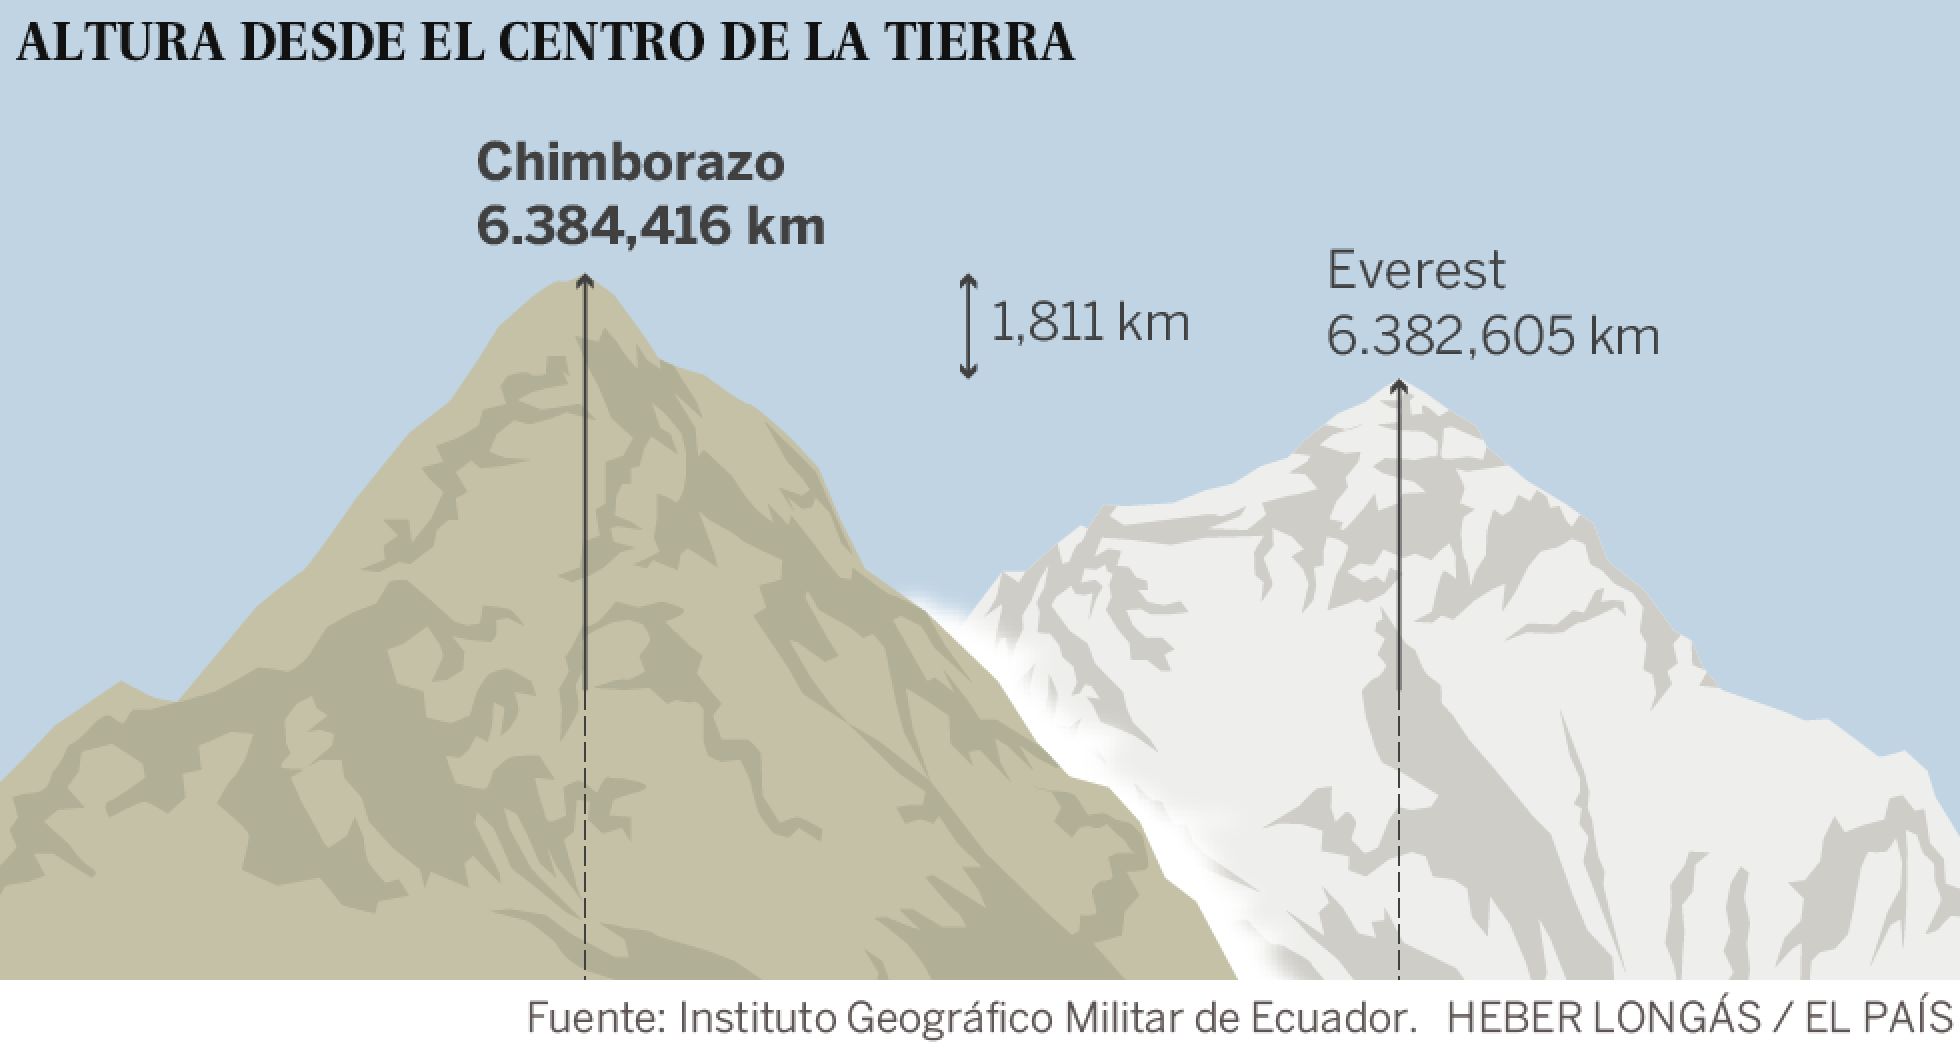 Эверест самая высокая где находится